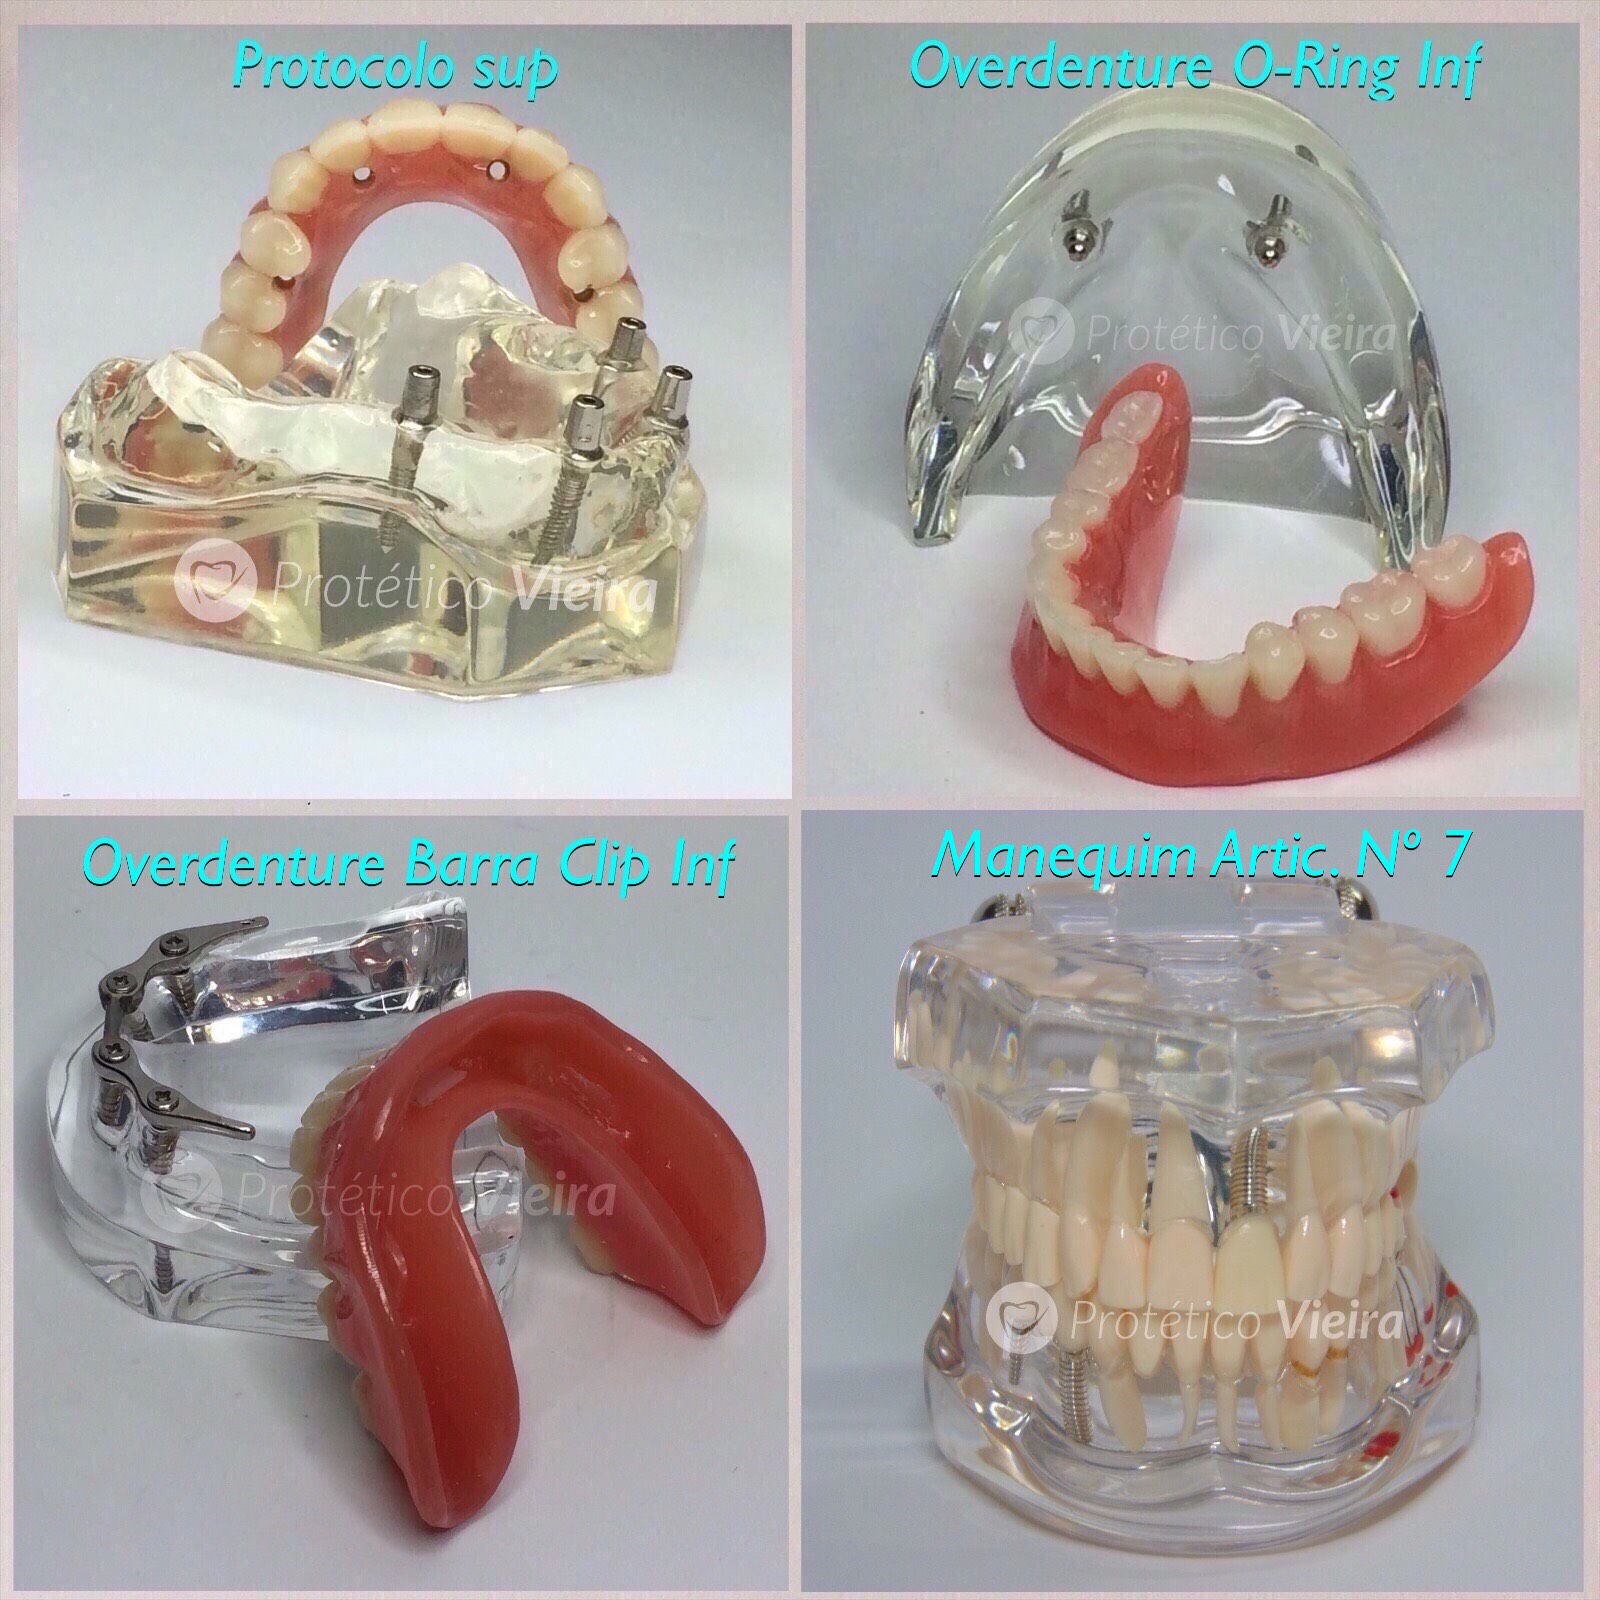 manequim odontológico articulado, protocolo, overdenture barra clip, o -  Manequins Odontológicos Protético Vieira